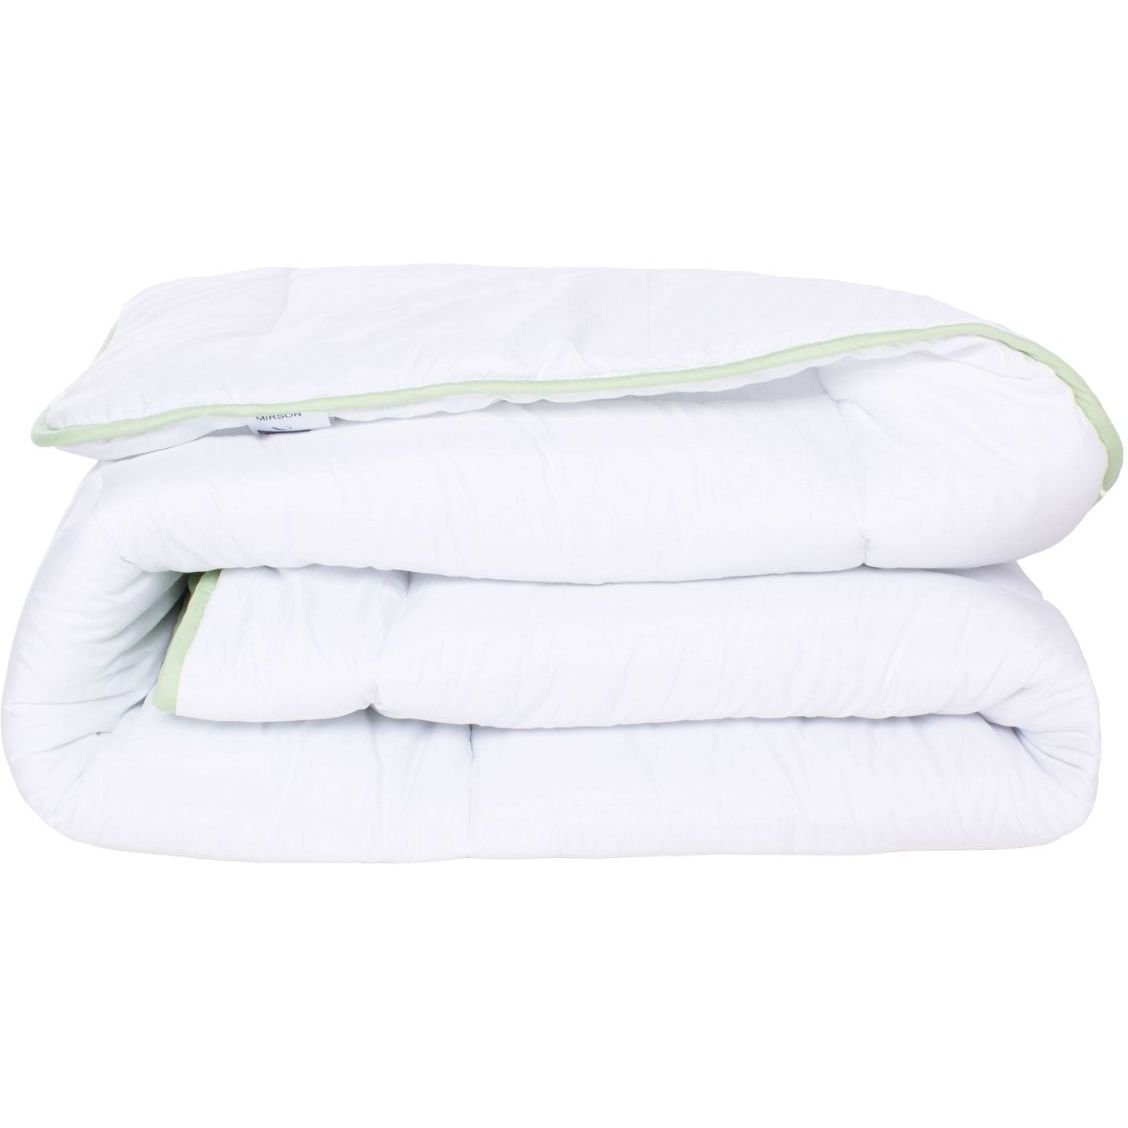 Одеяло антиаллергенное MirSon EcoSilk №003, зимнее, 140x205 см, белое (8062554) - фото 1